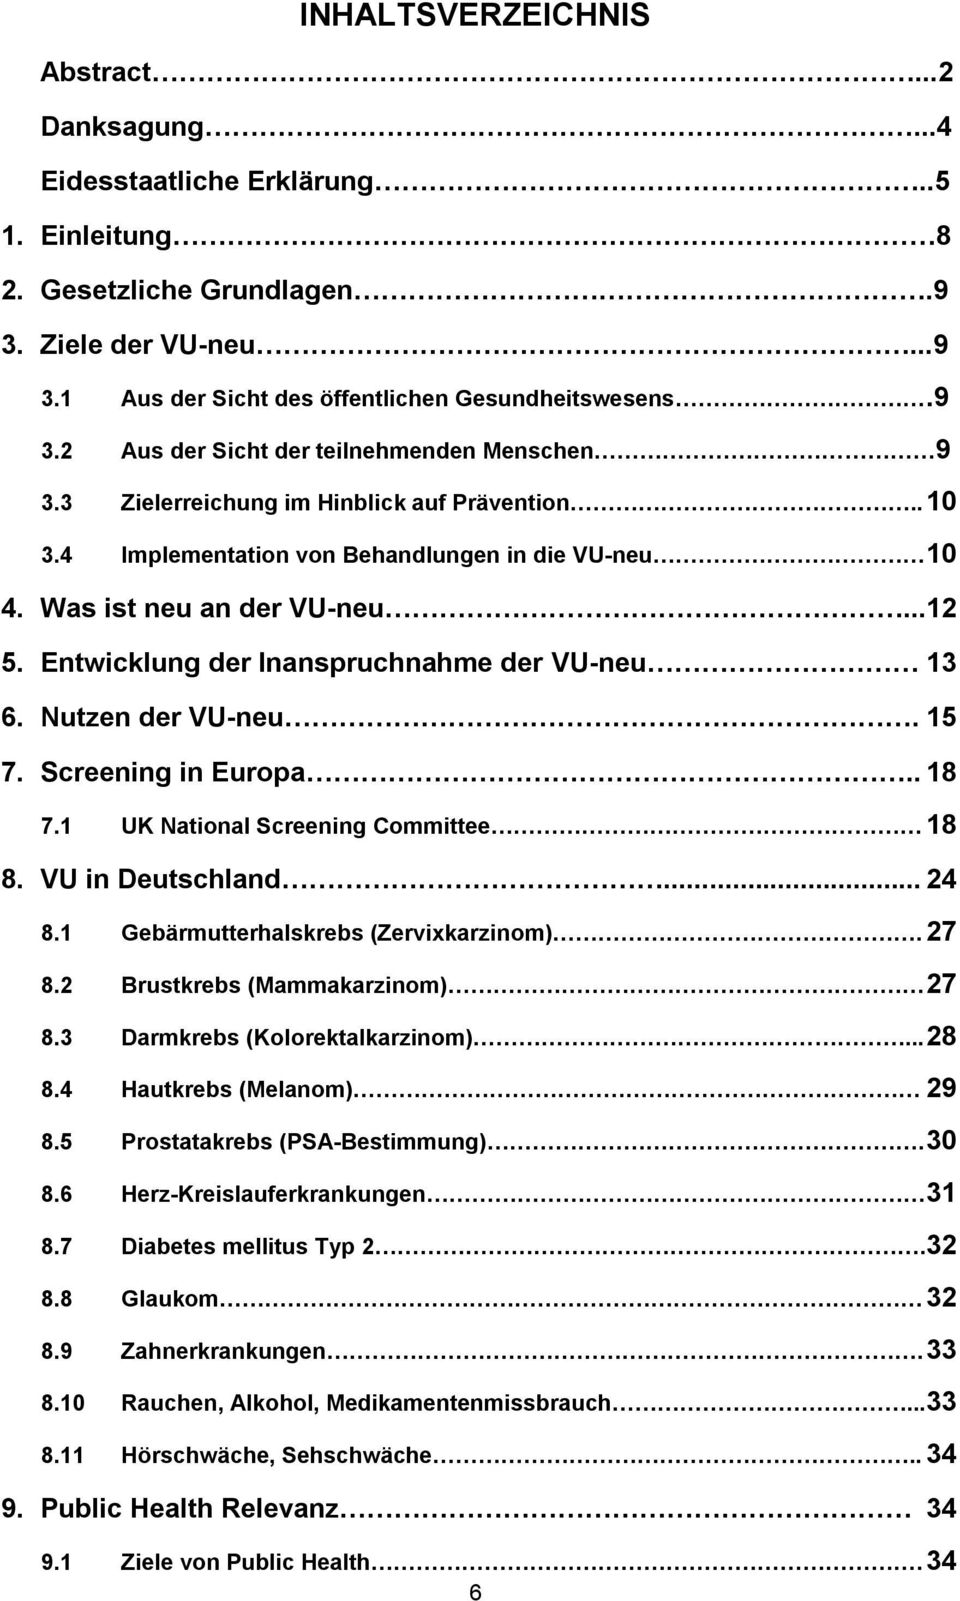 Entwicklung der Inanspruchnahme der VU-neu 13 6. Nutzen der VU-neu. 15 7. Screening in Europa.. 18 7.1 UK National Screening Committee 18 8. VU in Deutschland... 24 8.